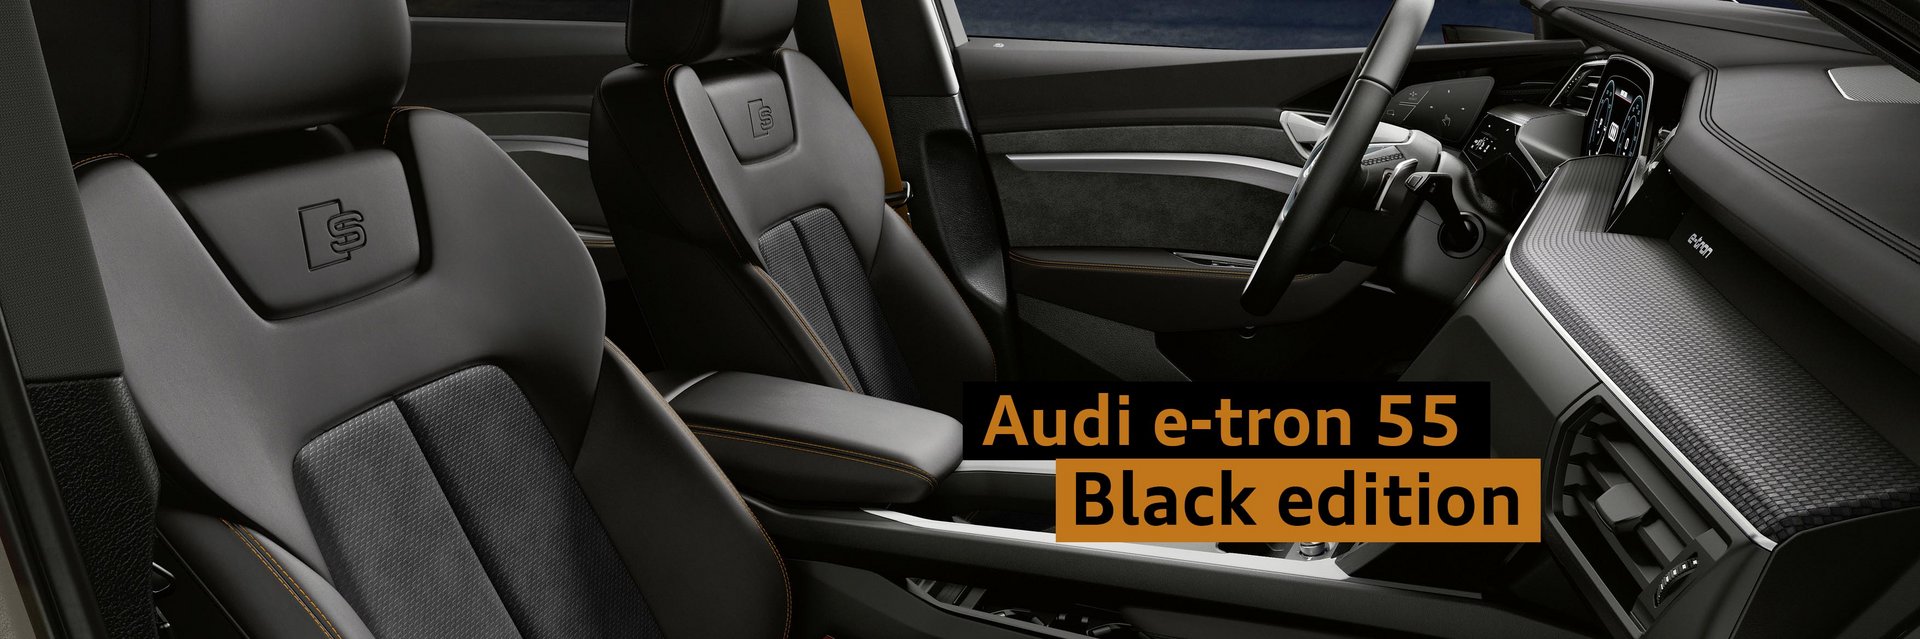 Audi e-tron black edition